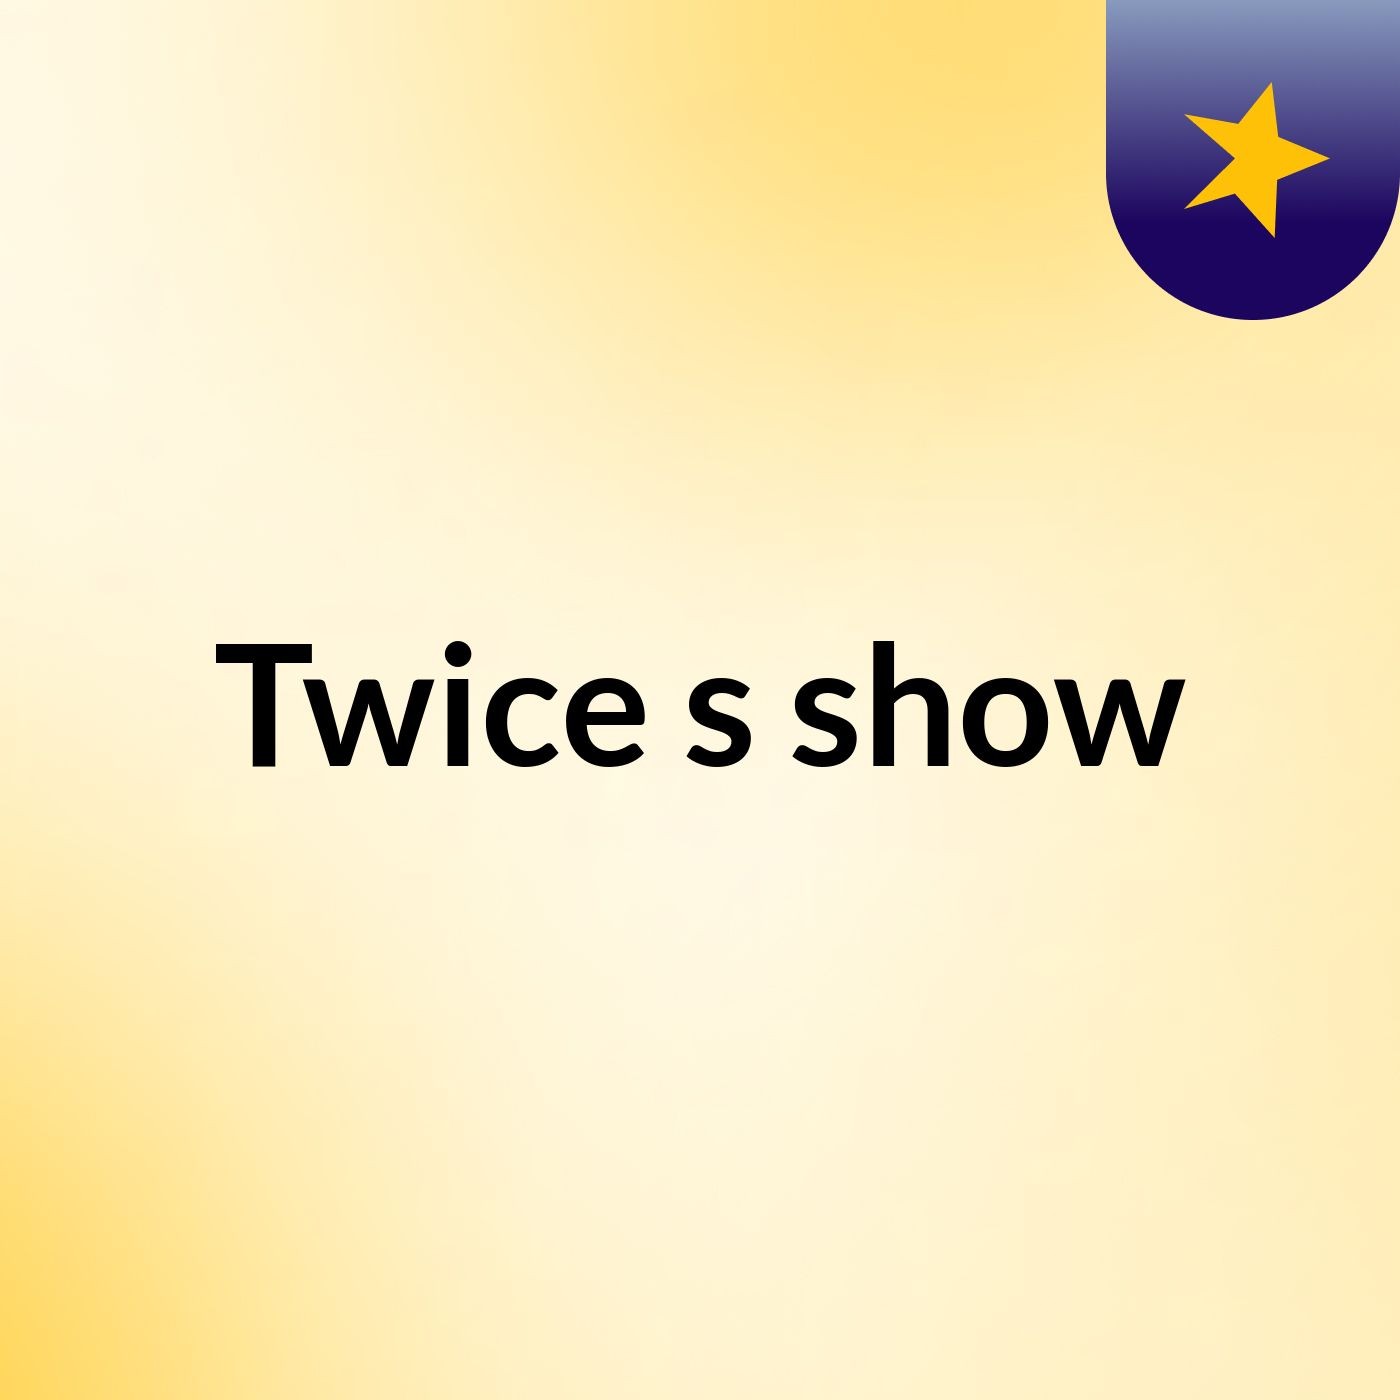 Twice's show